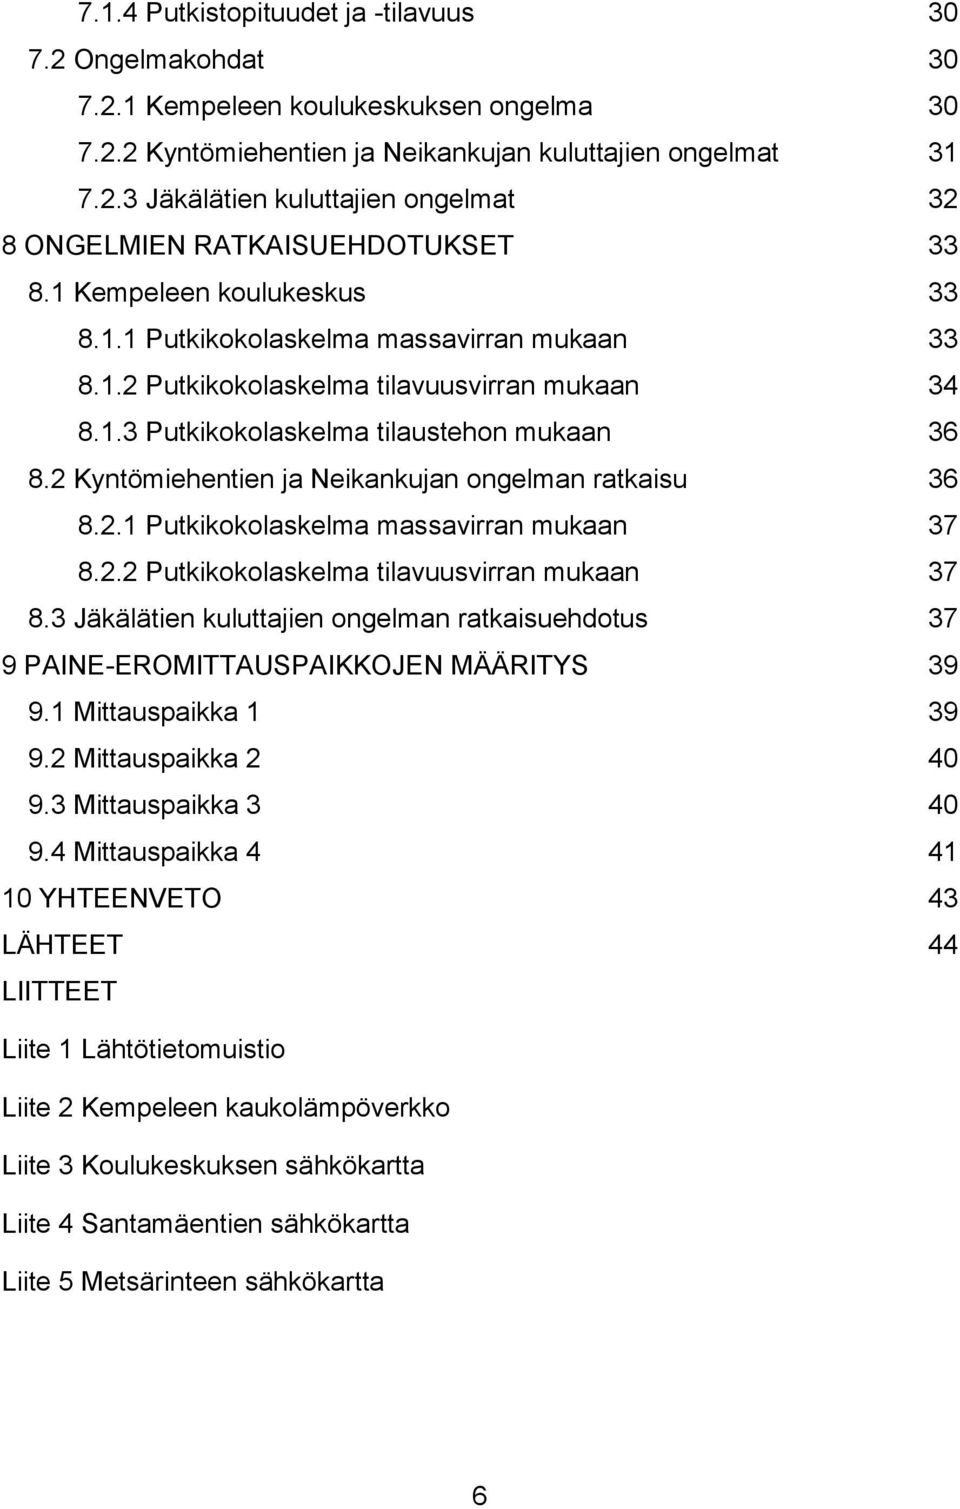 2 Kyntömiehentien ja Neikankujan ongelman ratkaisu 36 8.2.1 Putkikokolaskelma massavirran mukaan 37 8.2.2 Putkikokolaskelma tilavuusvirran mukaan 37 8.